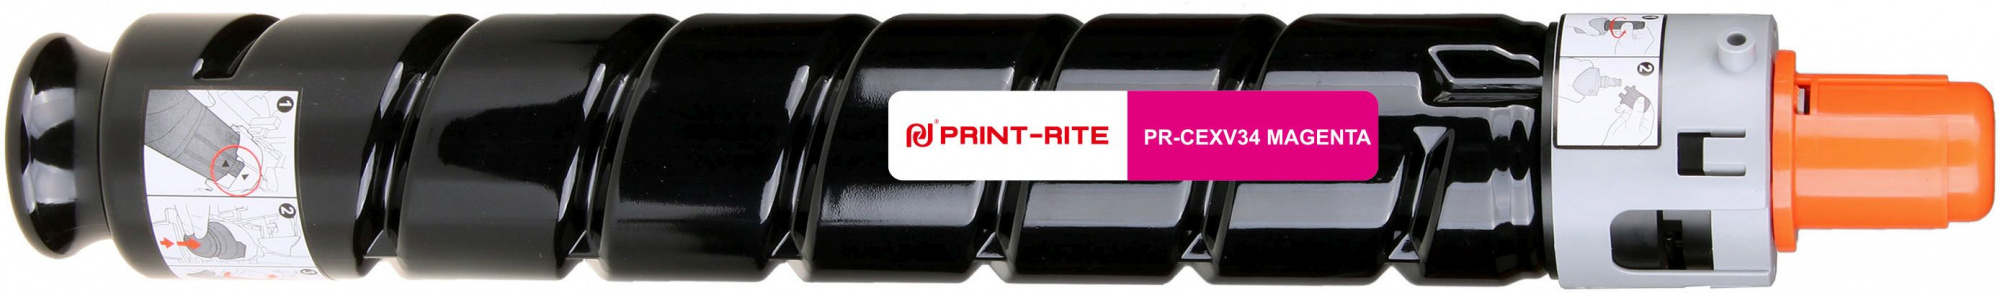   Print-Rite TFC389MPRJ PR-CEXV34 MAGENTA C-EXV34 Magenta  (19000.)  Canon IR Advance C2030L/C2030i/C2020L/C2020i/C2025i